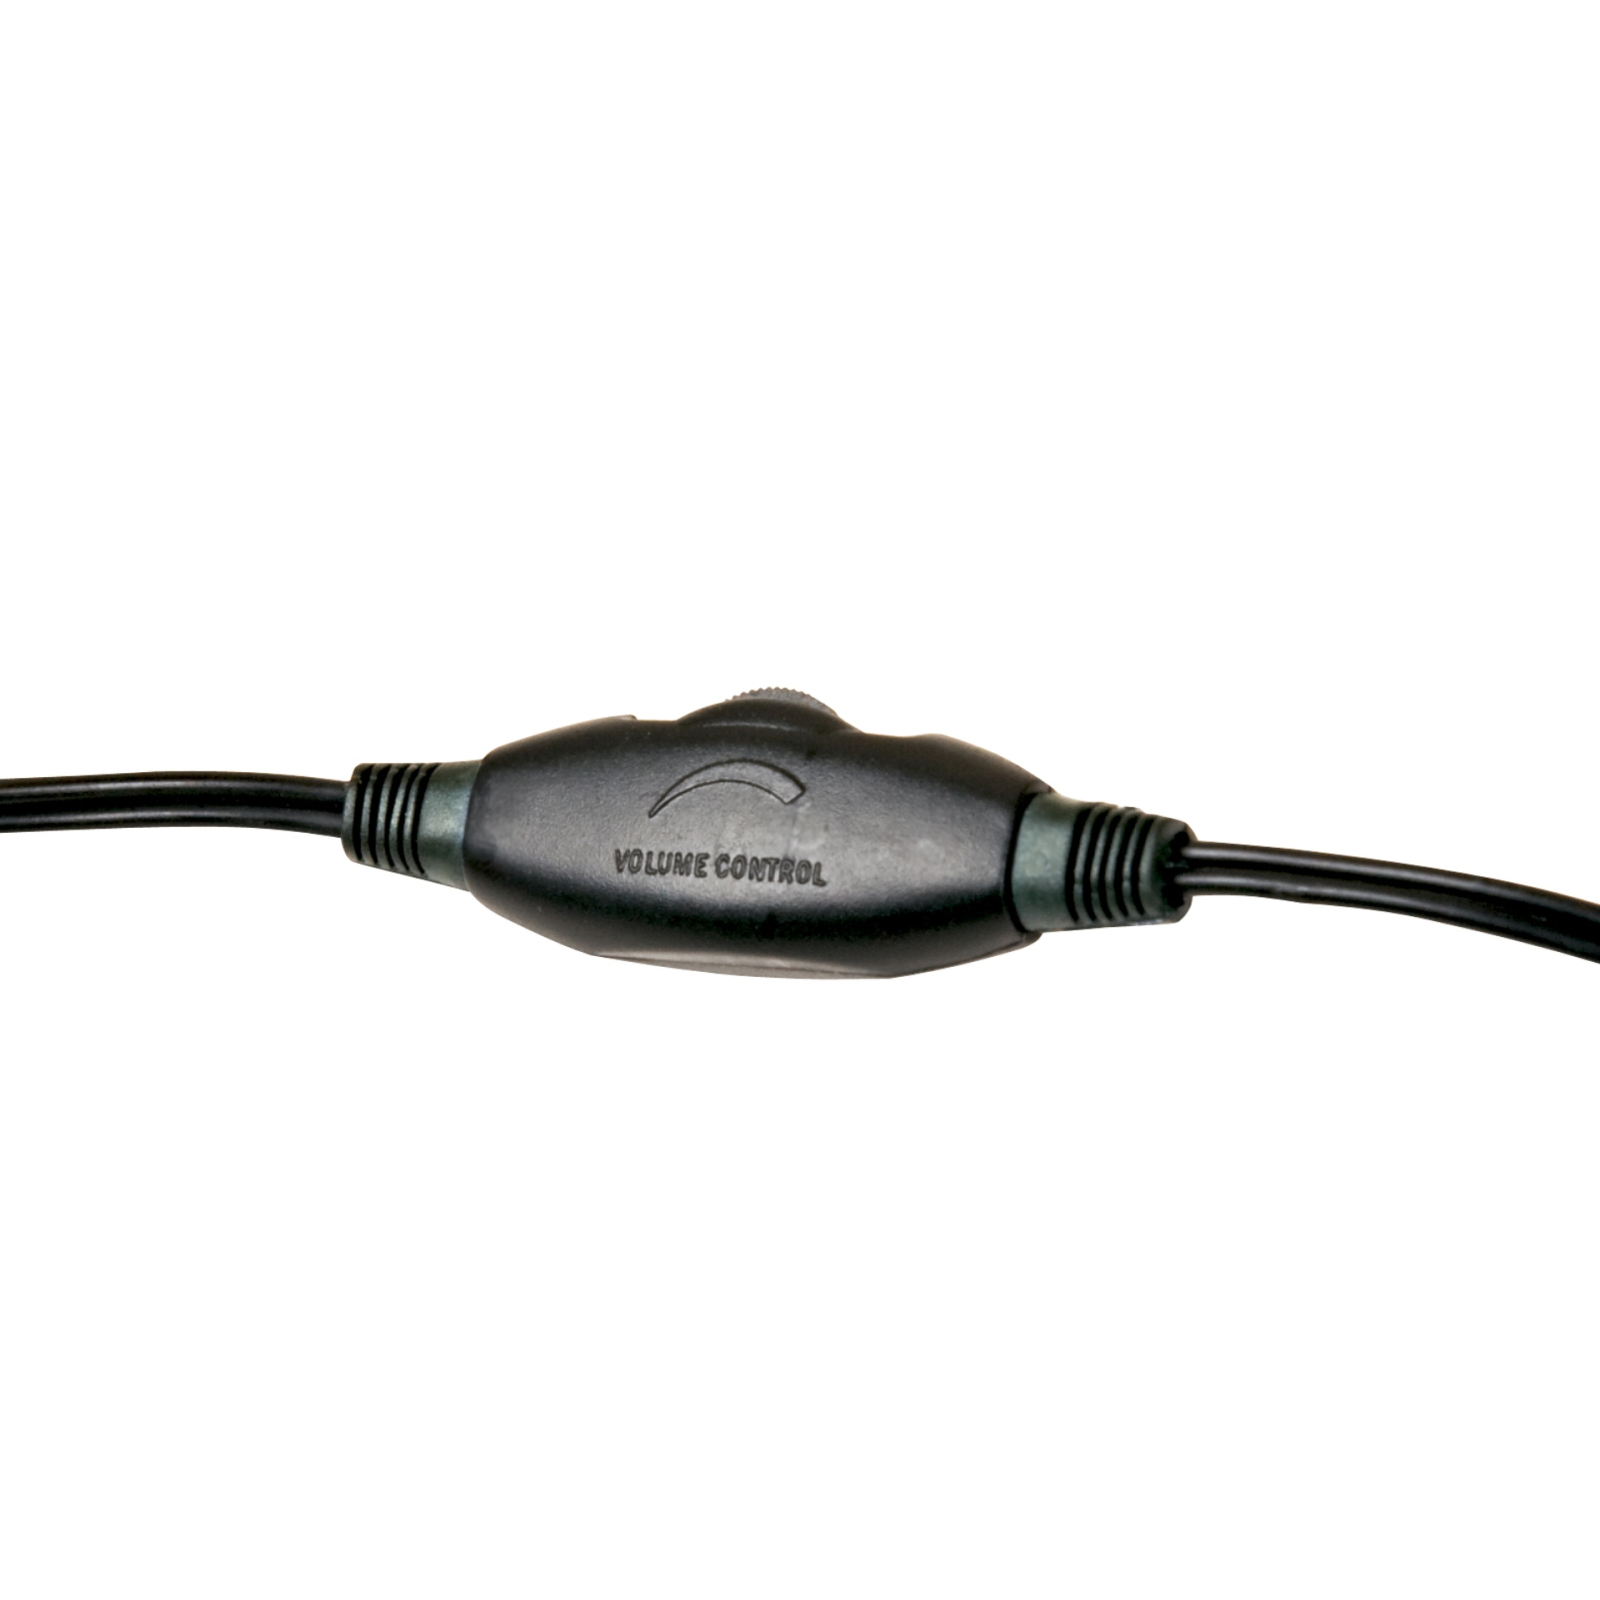 Навушники Defender Gryphon HN-750 Black (63750) зображення 4